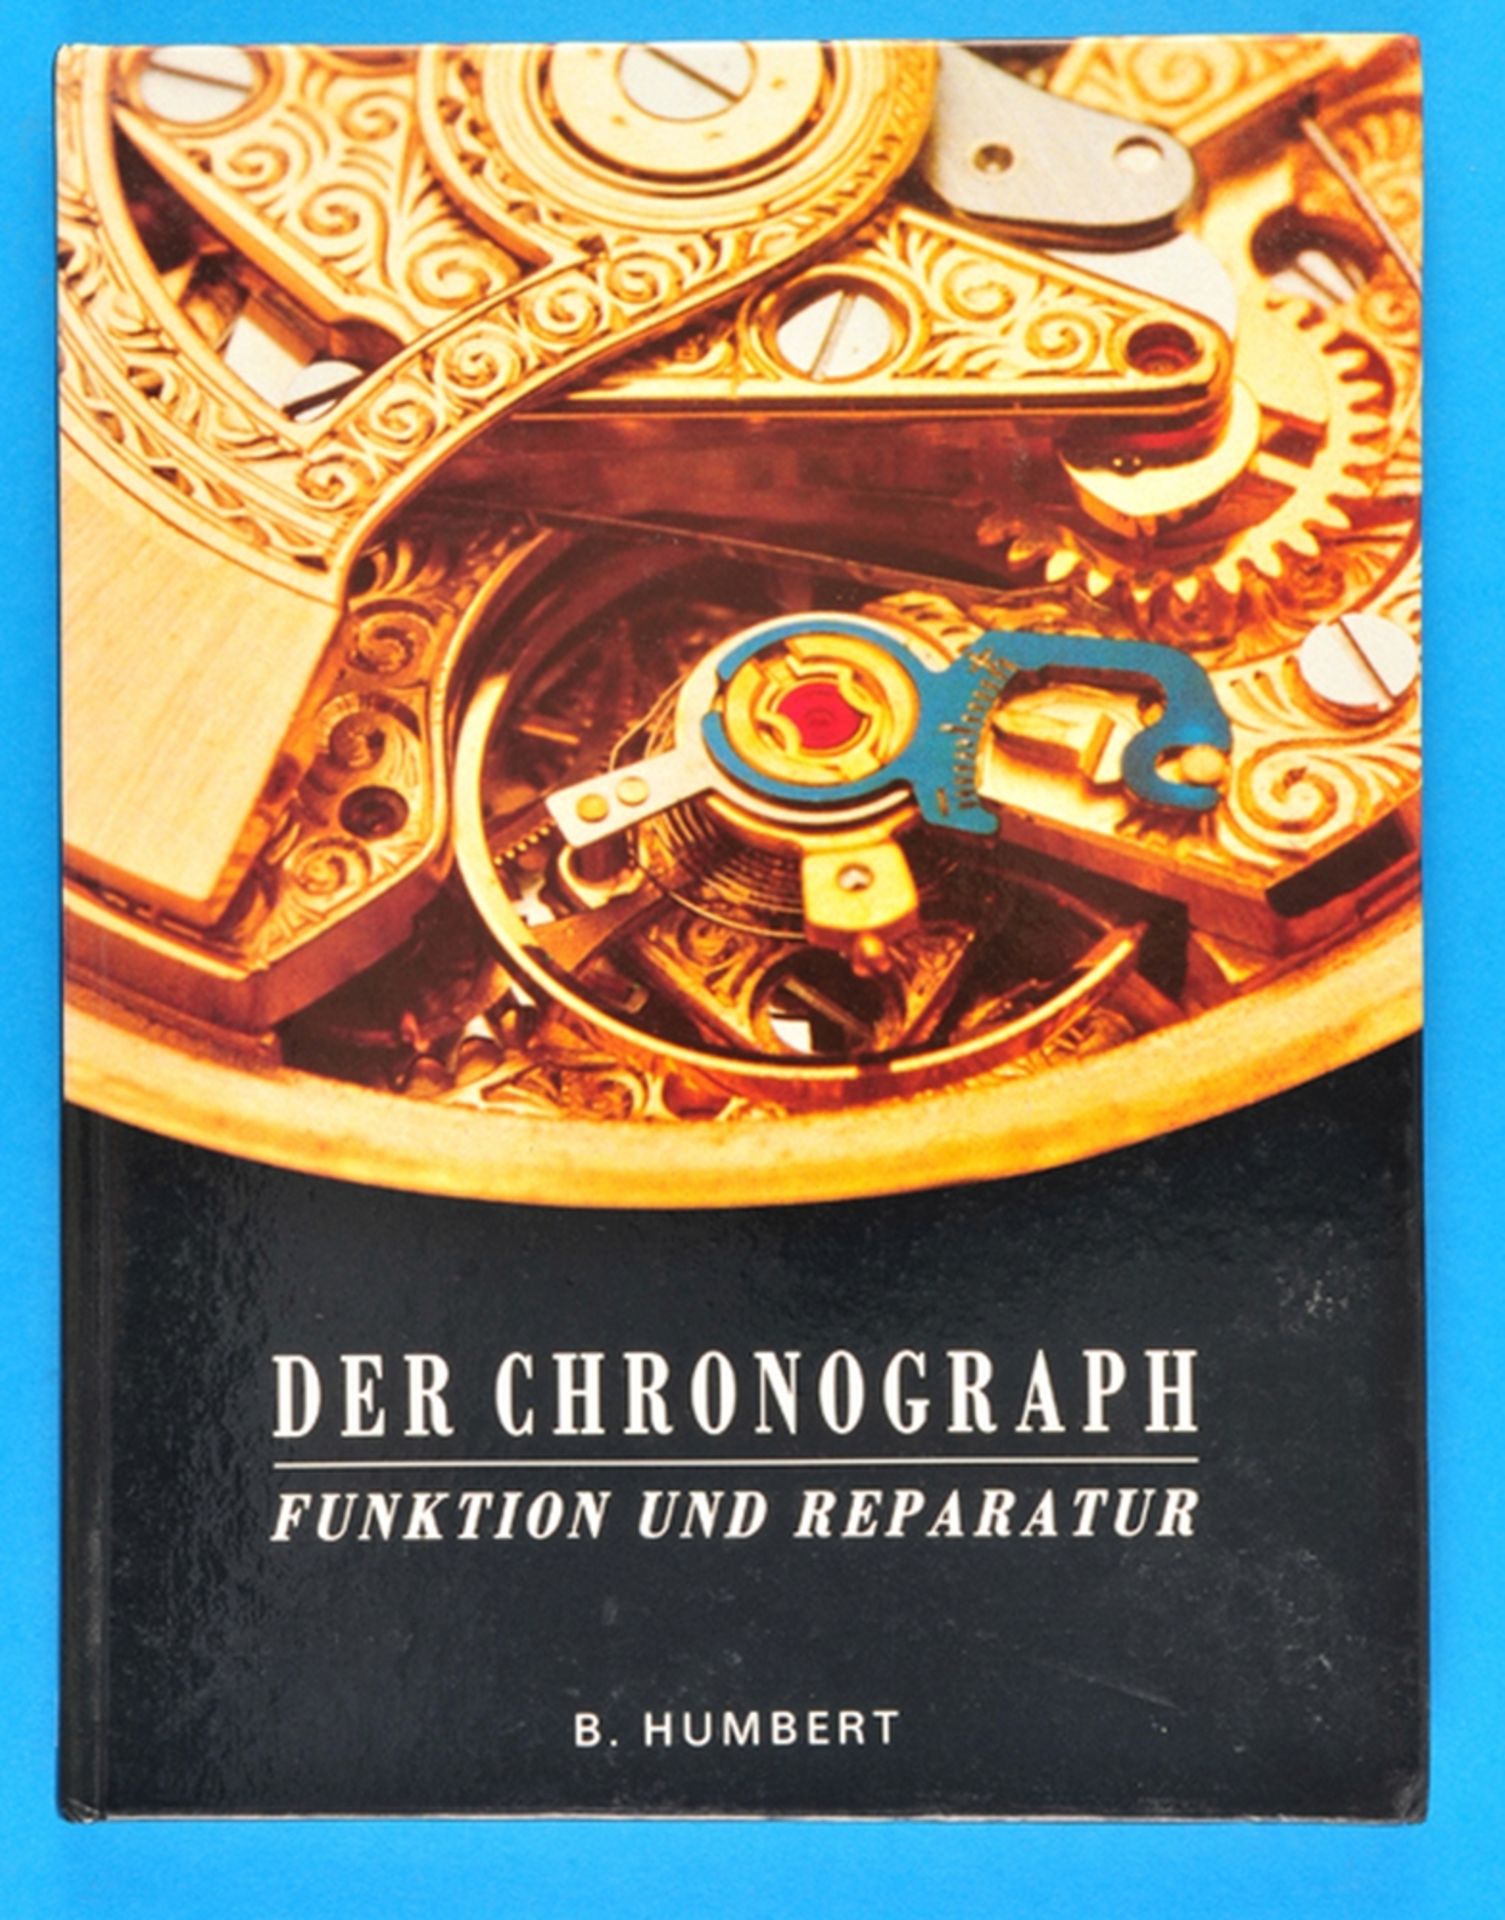 B. Humbert, Der Chronograph, Funktion und Reparatur, 1990